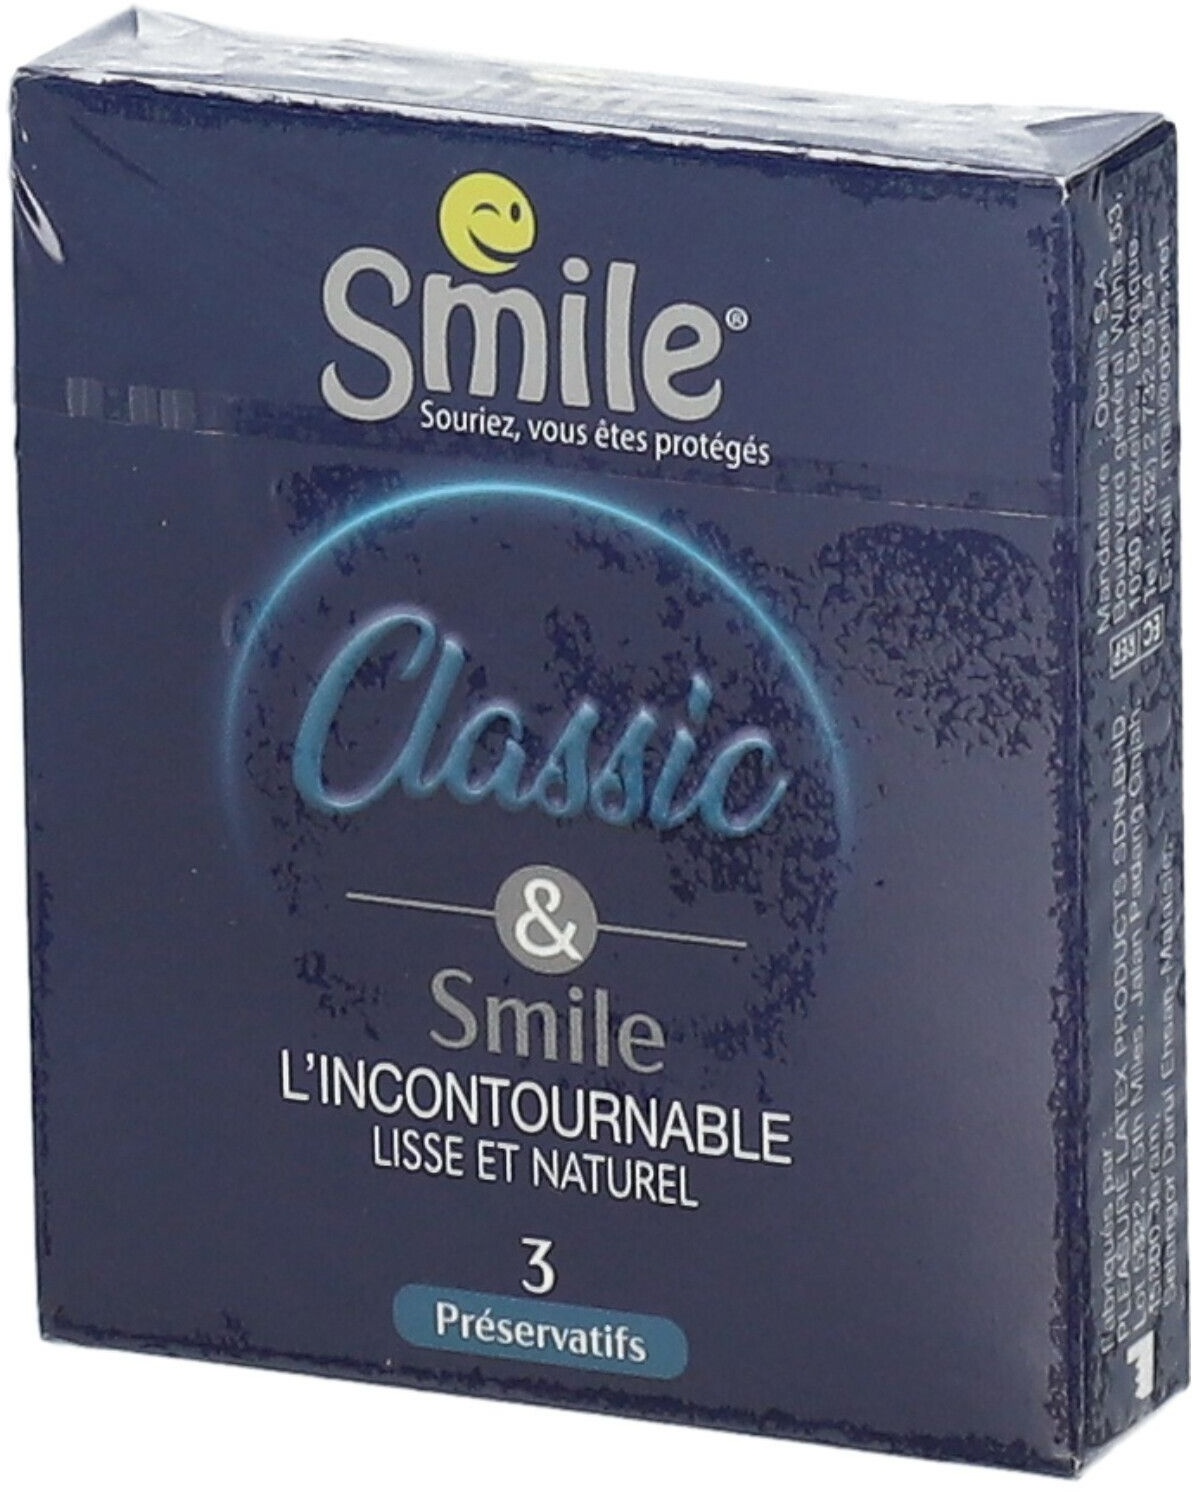 Smile® Préservatifs 3 pc(s) préservatif(s)